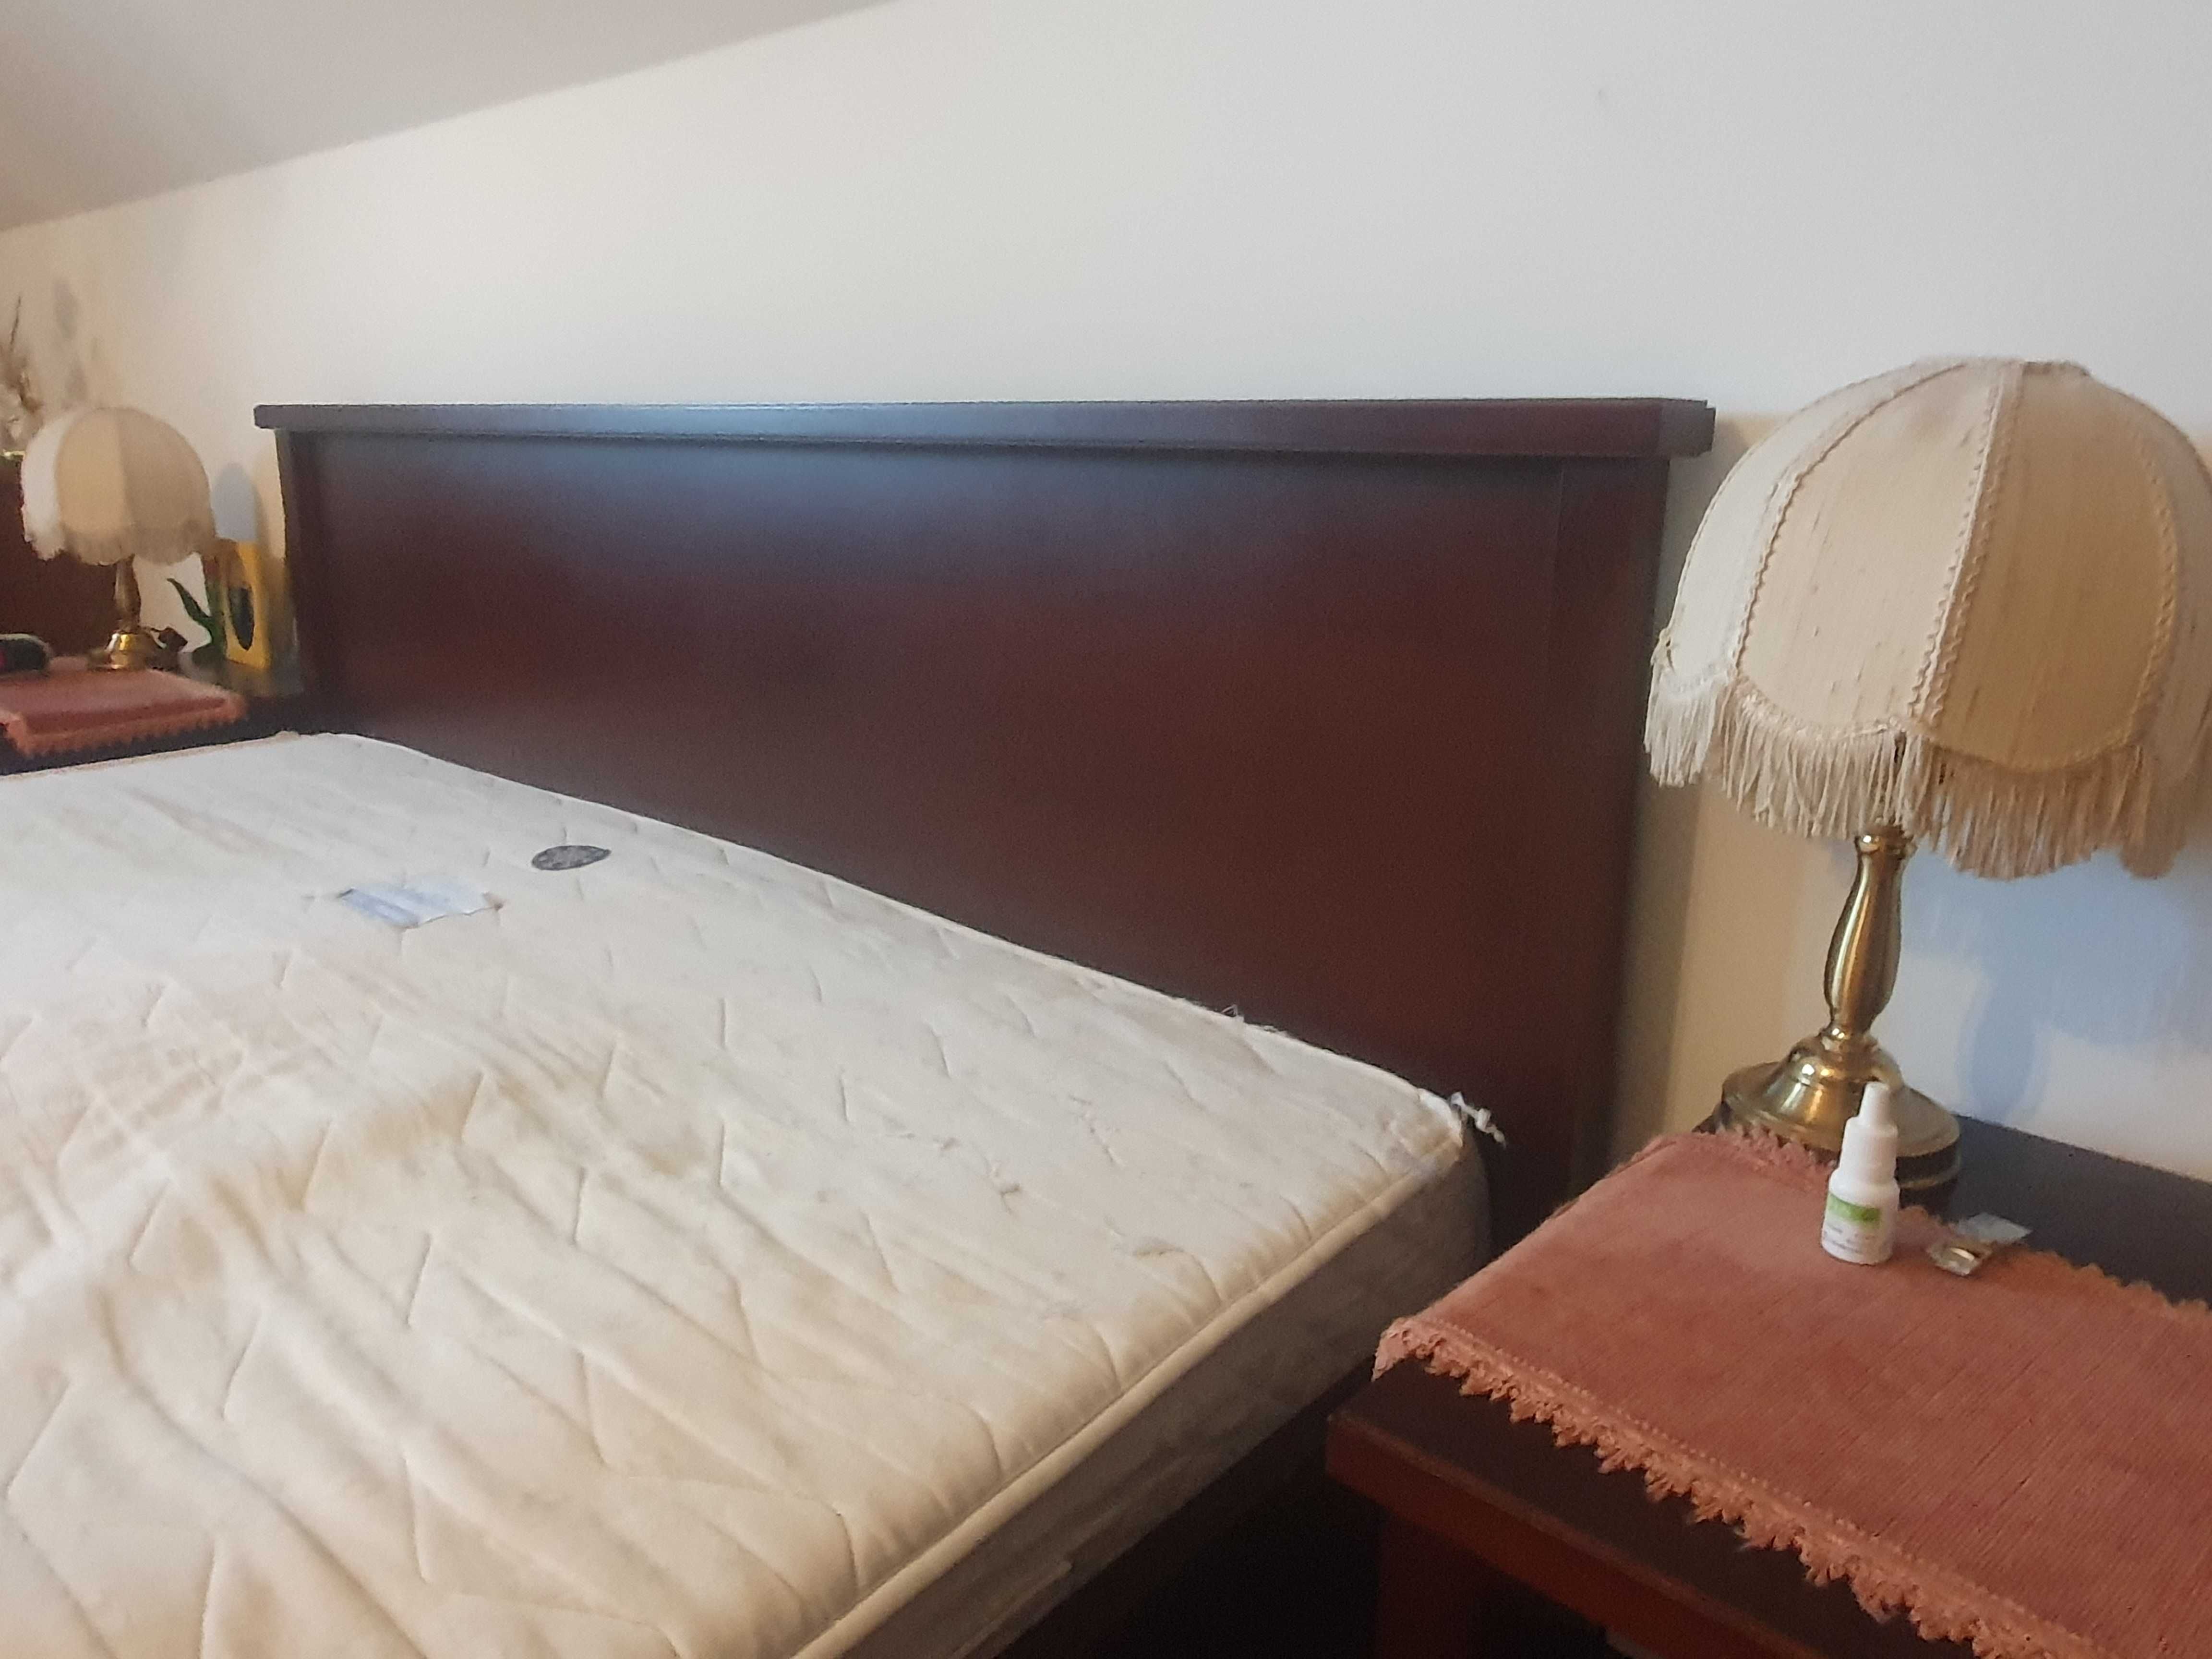 Łóżko drewniane 160 x 200